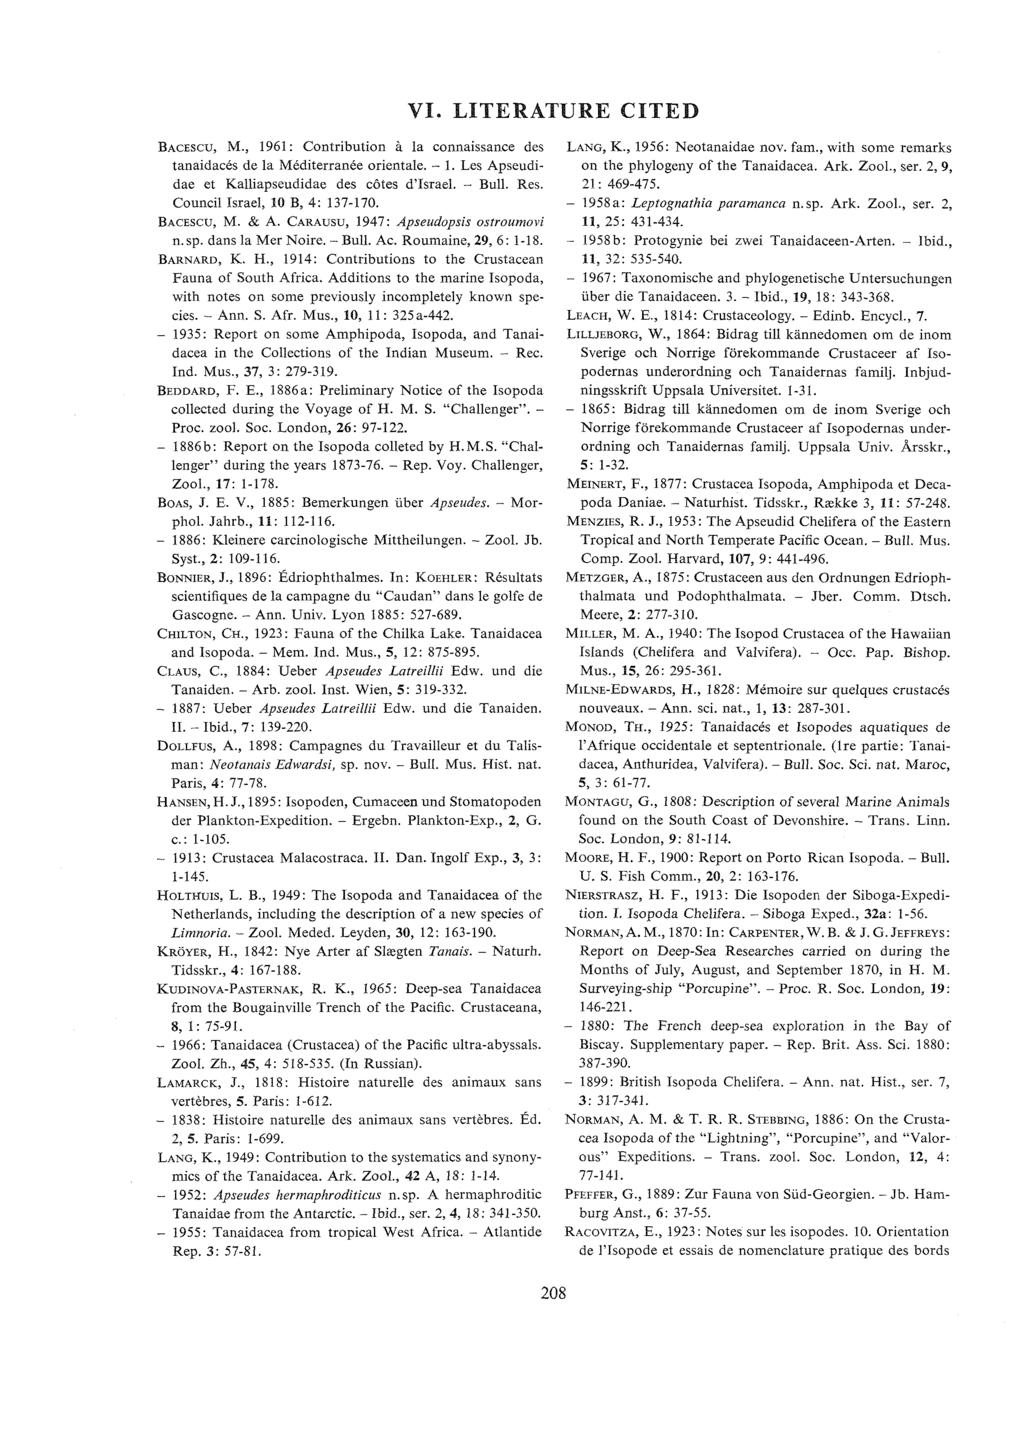 VI. LITERATURE CITED BACESCU, M., 1961: Contribution a la connaissance des tanaidaces de la Mediterranee orientale. - 1. Les Apseudidae et Kalliapseudidae des cbtes d'israel. - Bull. Res.